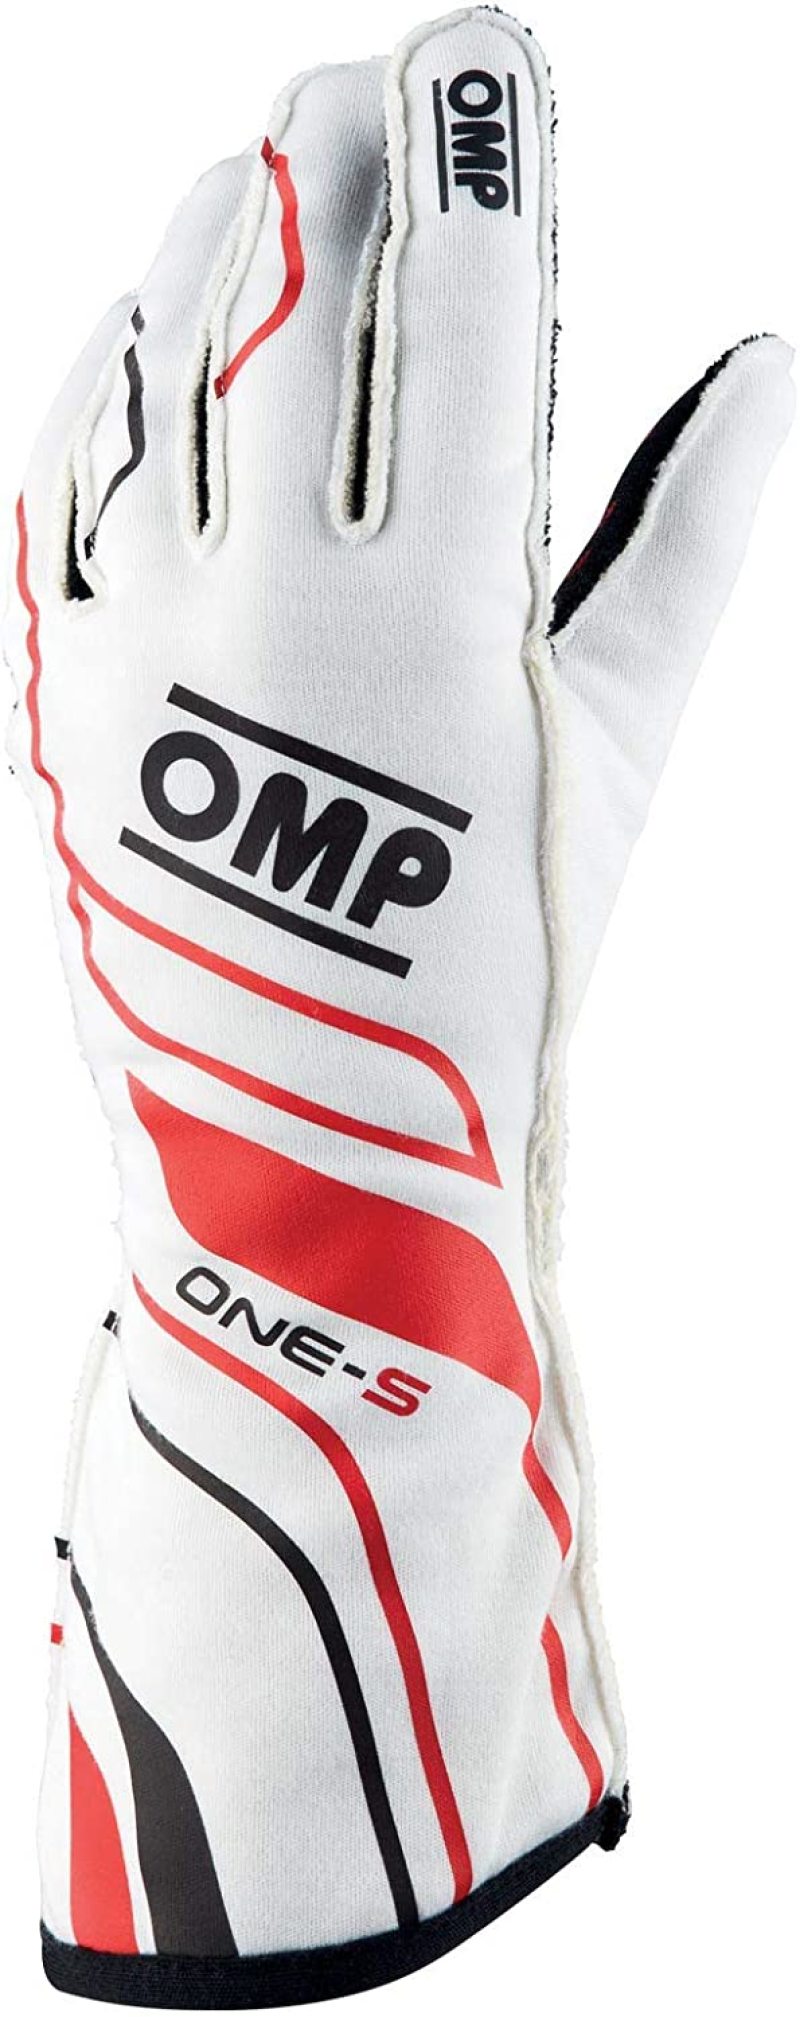 OMP One-S Gloves White - Size XXL Fia 8556-2018 - IB0-0770-A01-020-XXL